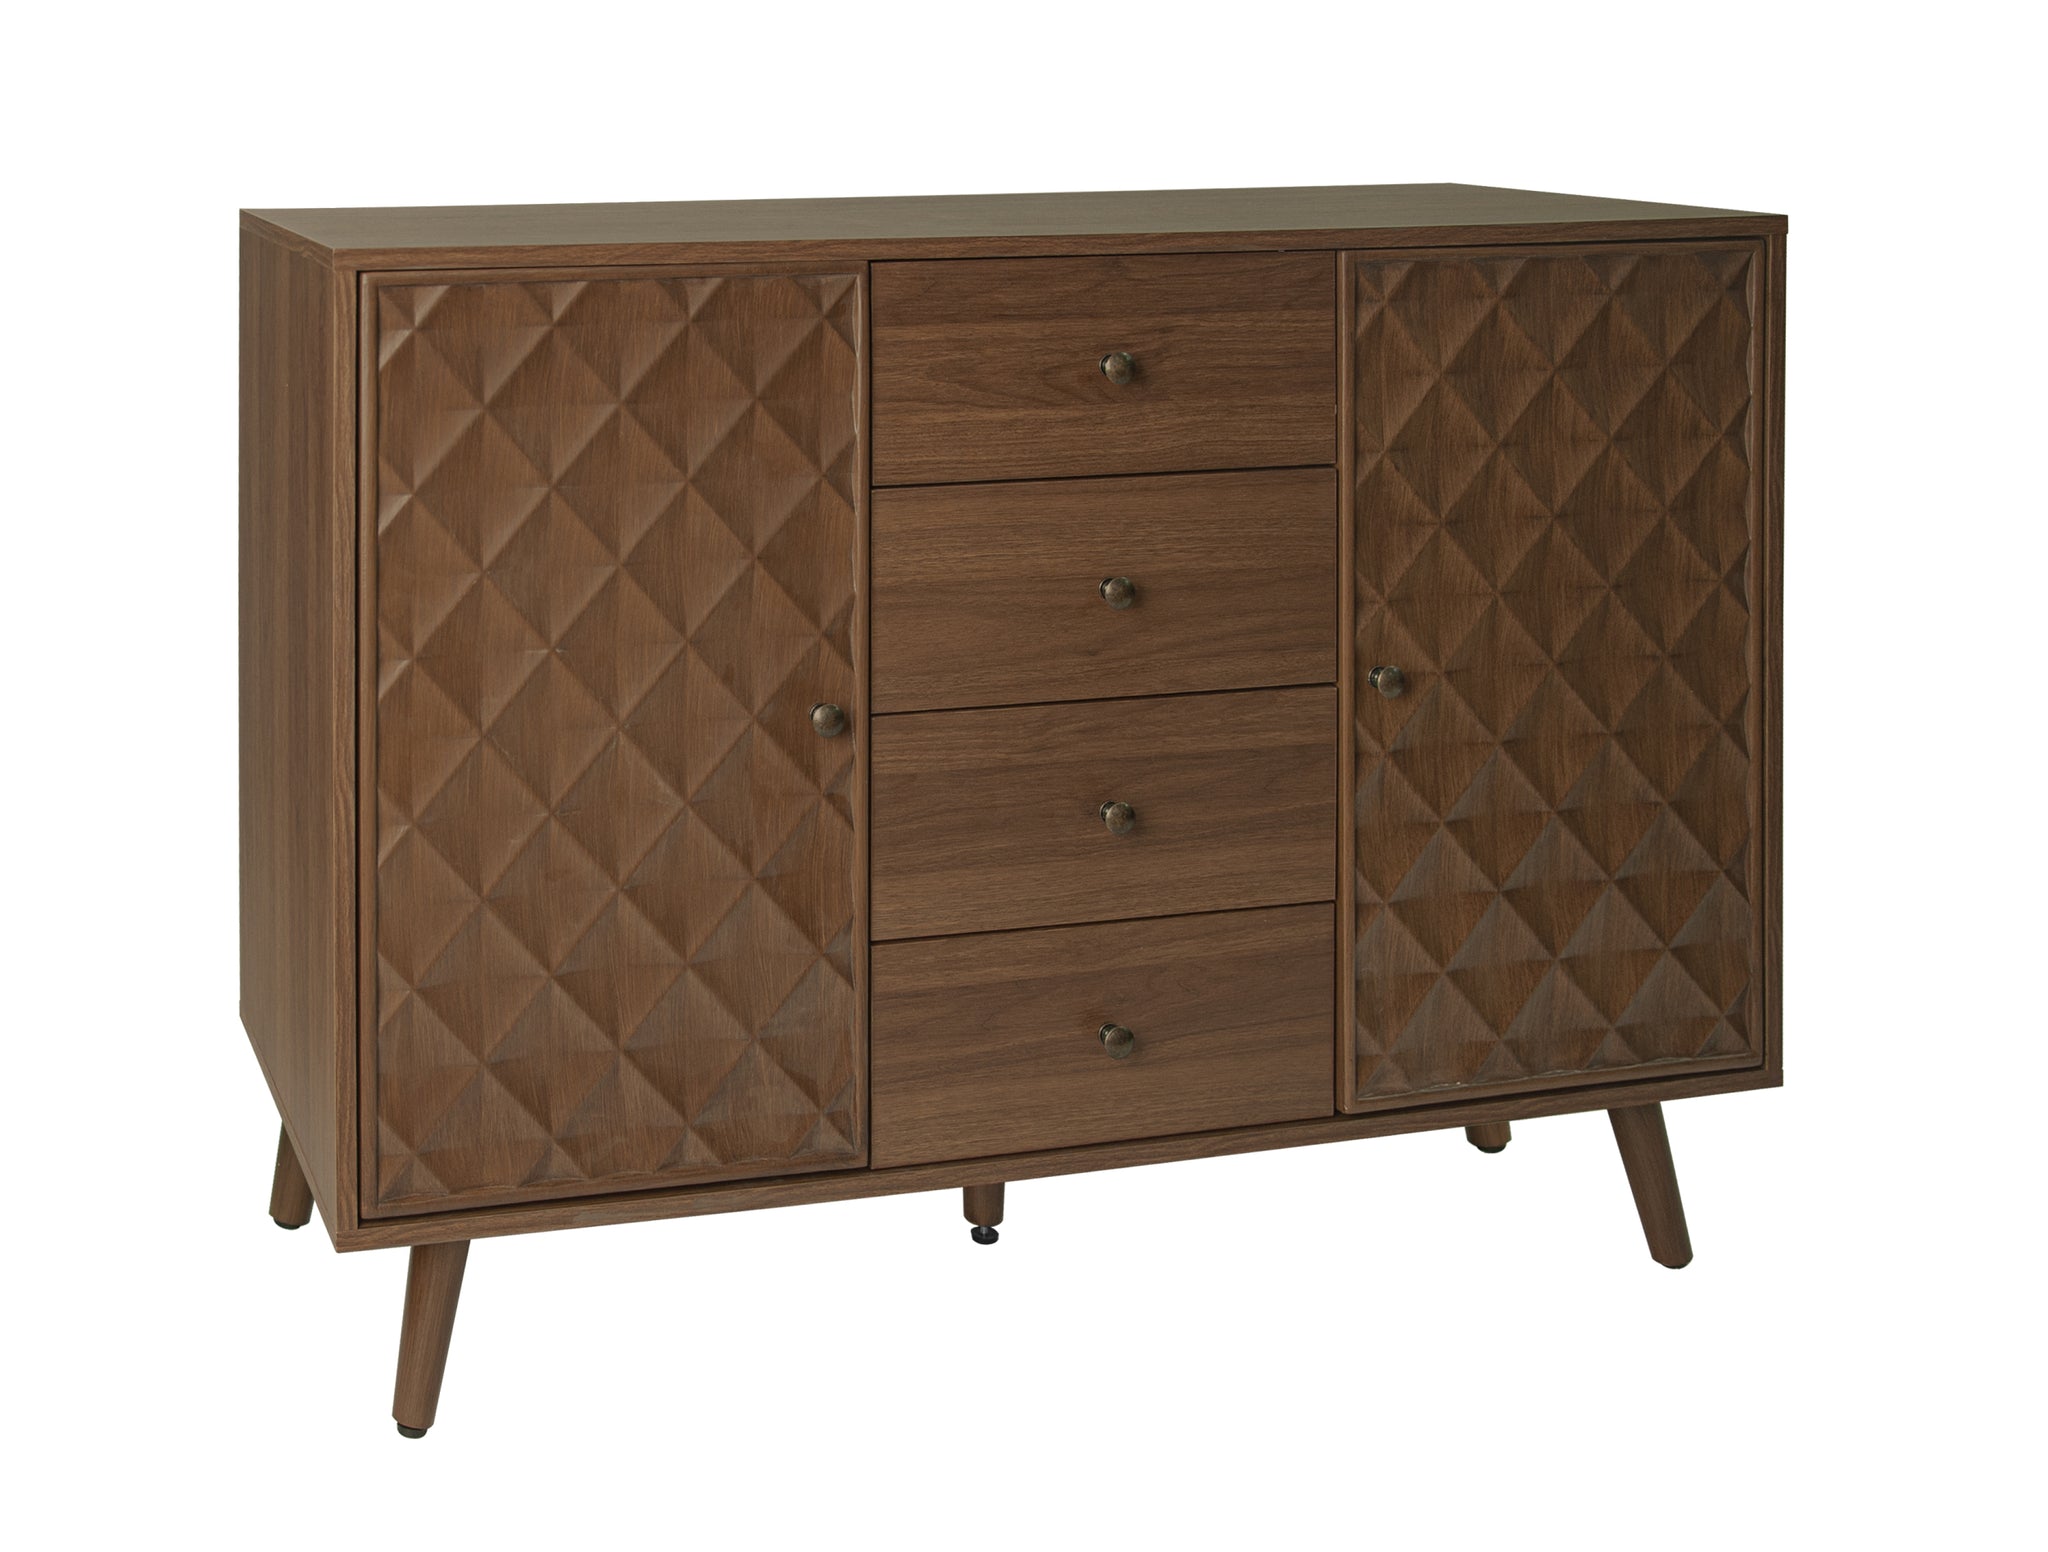 2 door 4 drawer cabinet, Suitable for Bedroom,